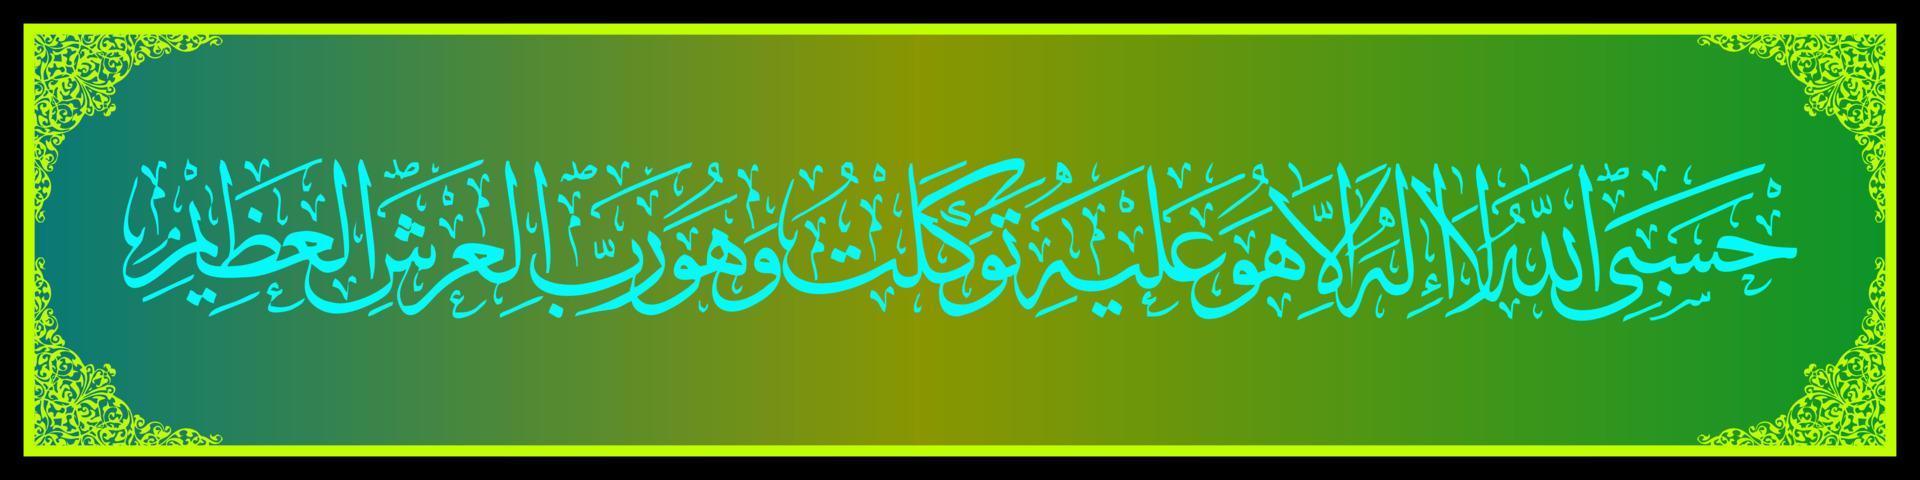 calligraphie arabe al quran surah at taubah 129, traduisez donc s'ils se détournent de la foi, puis dites muhammad, allah me suffit il n'y a pas d'autre dieu que lui. vecteur